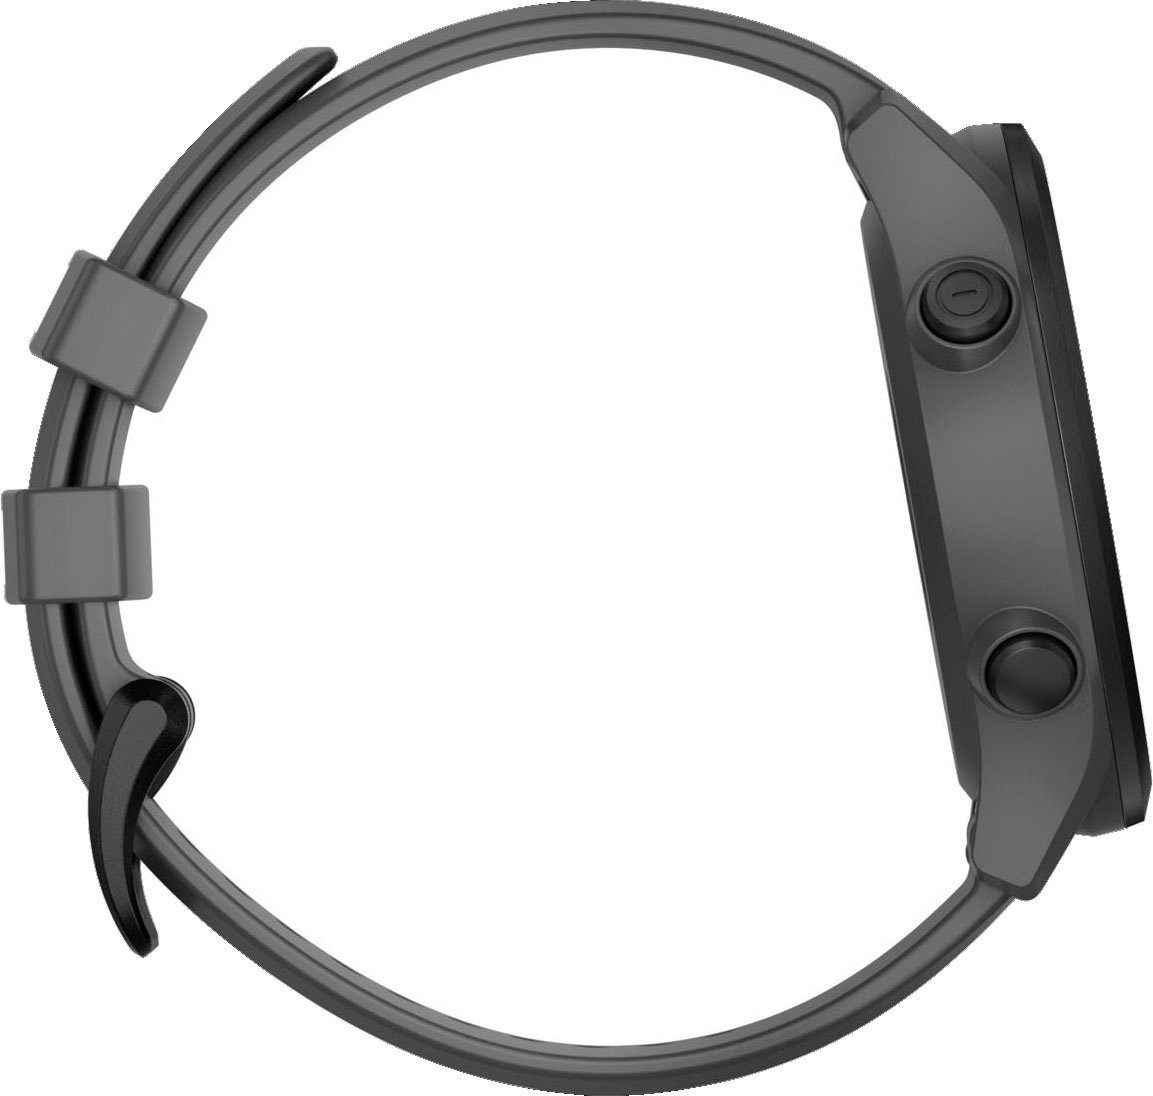 Garmin APPROACH S12 2022 Edition cm/1,3 grau/schwarz Garmin) (3,3 | Zoll, Smartwatch grau